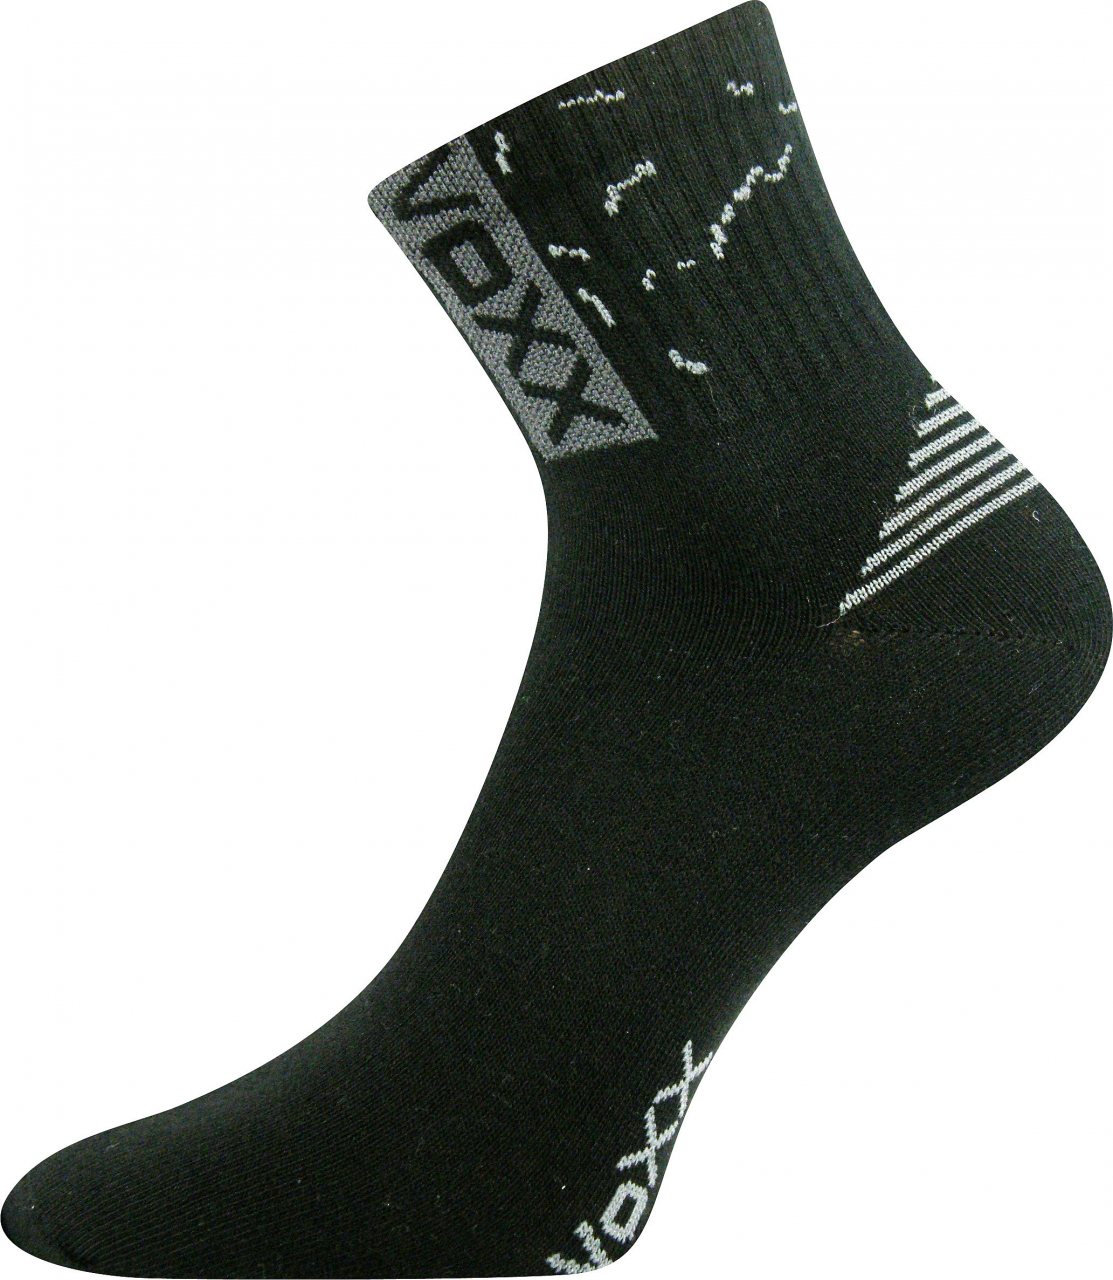 Ponožky sportovní Voxx Codex - černé, 39-42